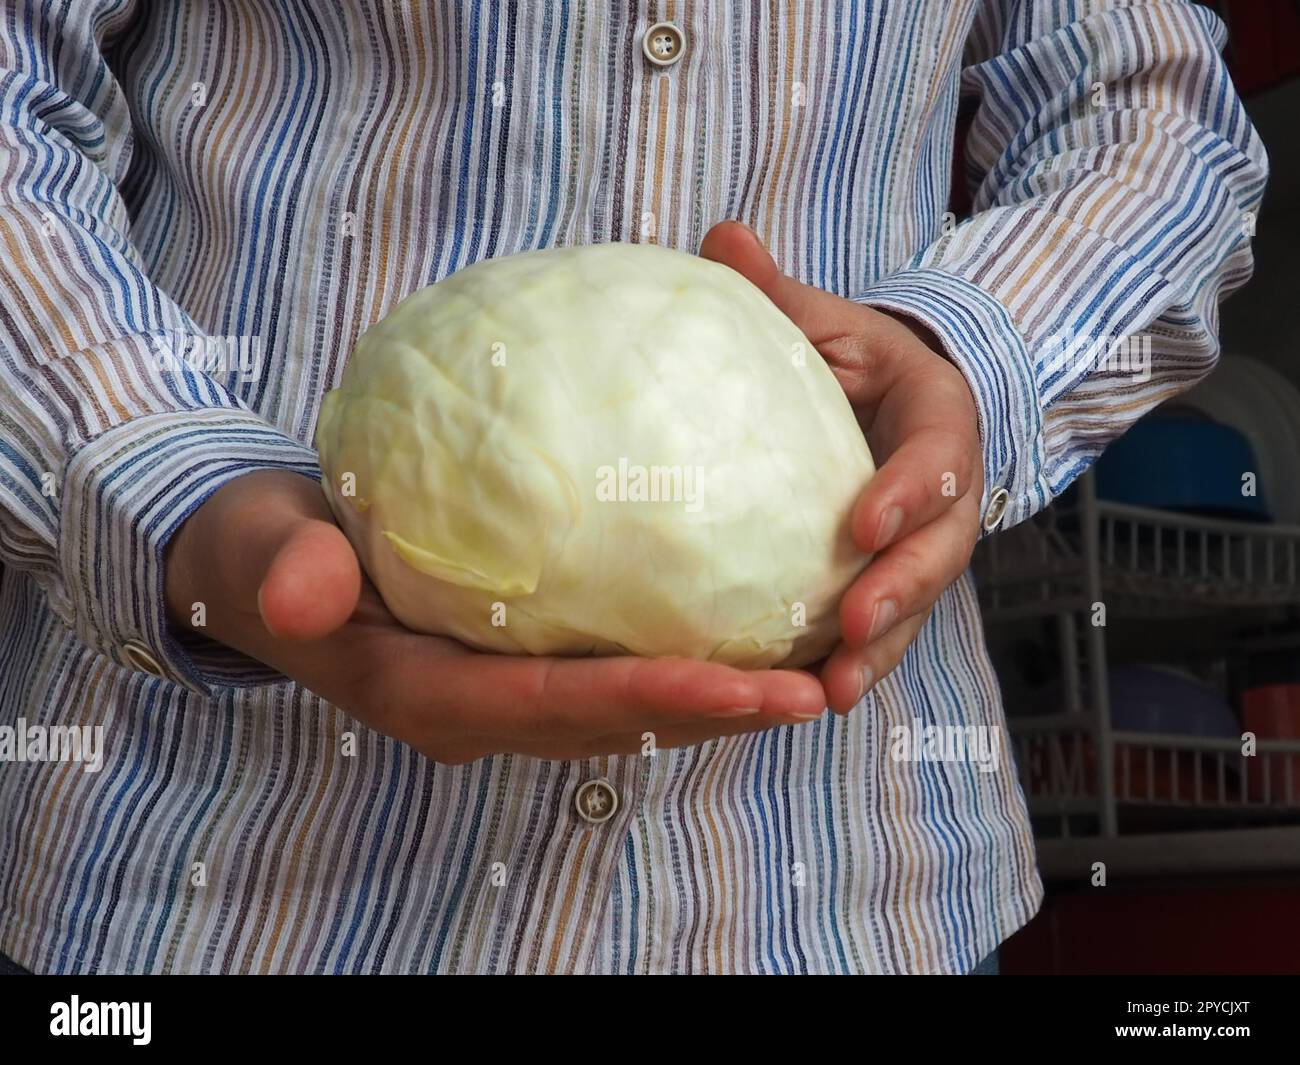 Weißkohl in den Händen. Eine Frau in einem weißen Hemd mit Streifen hält einen Kohlschaukel in der Hand und bietet ihn dem Zuschauer an. Frische Kohlernte. Vegetarisches Essen. Grüner Gemüsesalat Stockfoto